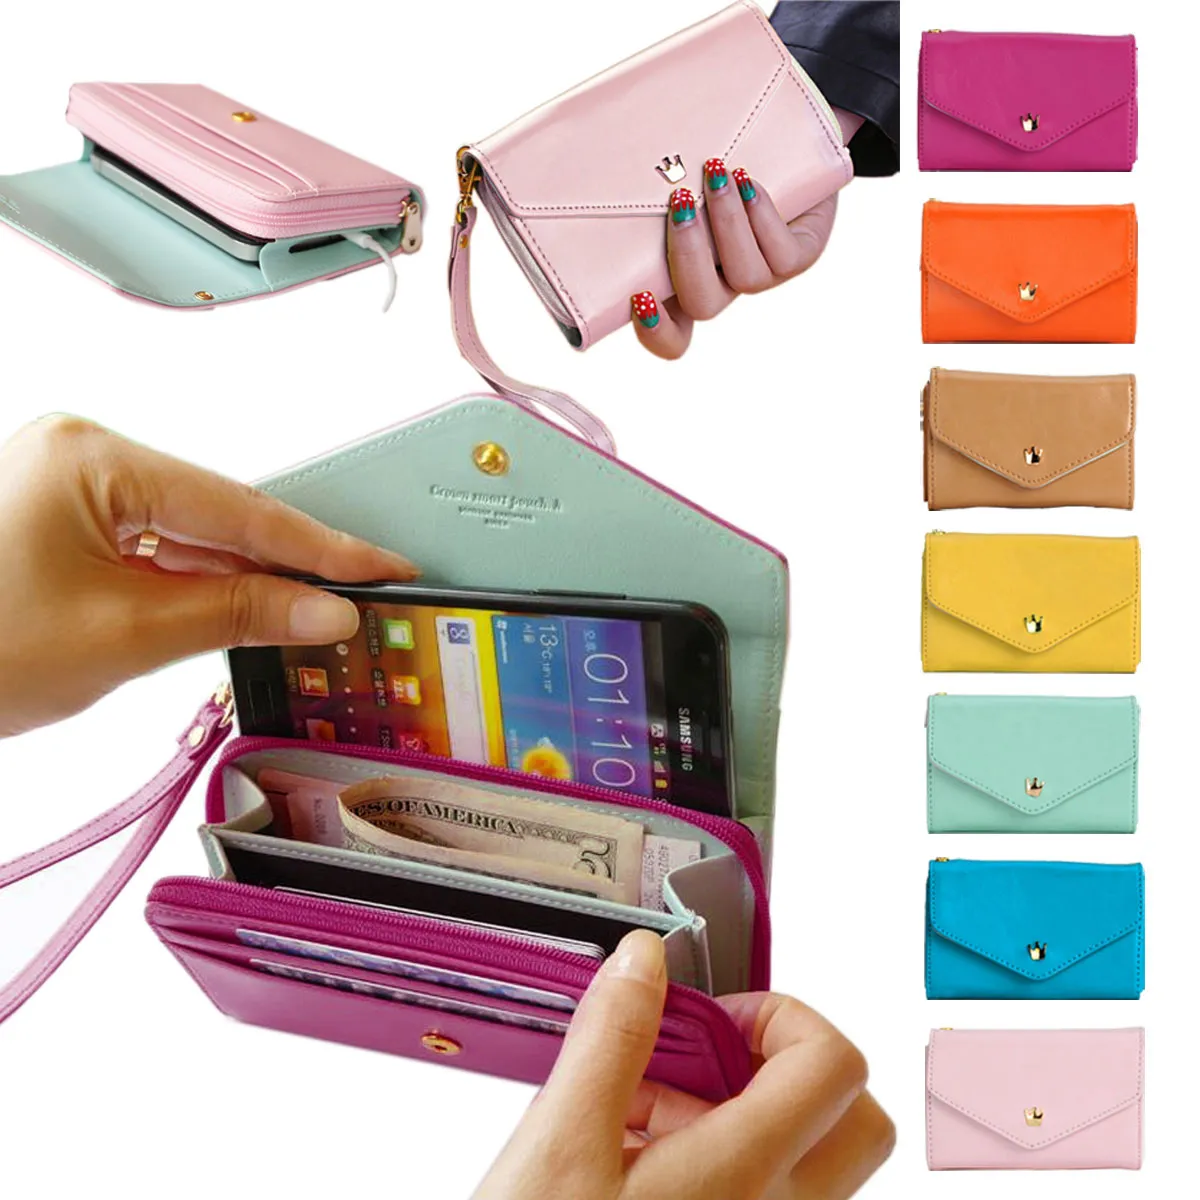 Frauen Marke Frauen Brieftaschen Berühmte Marke Designer Leder Geldbörsen Multi Farben Kartenhalter Frauen Telefon Brieftaschen für iPhone 5 5S